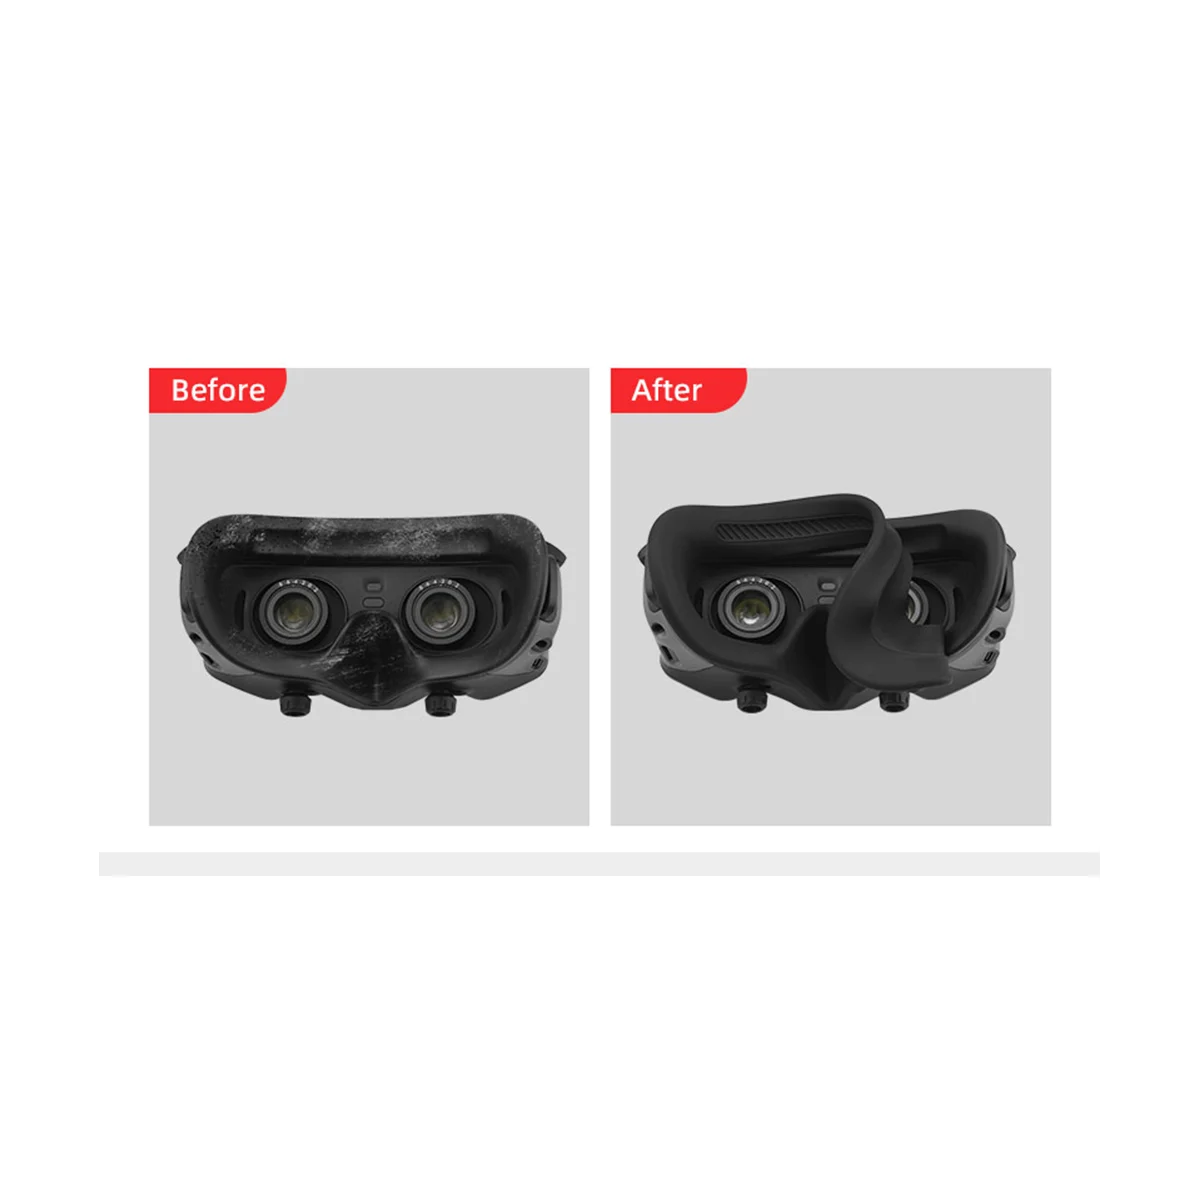 

Защитный силиконовый чехол для очков DJI Avata Goggles 2, аксессуары для очков DJI Avata G2 VR черного цвета